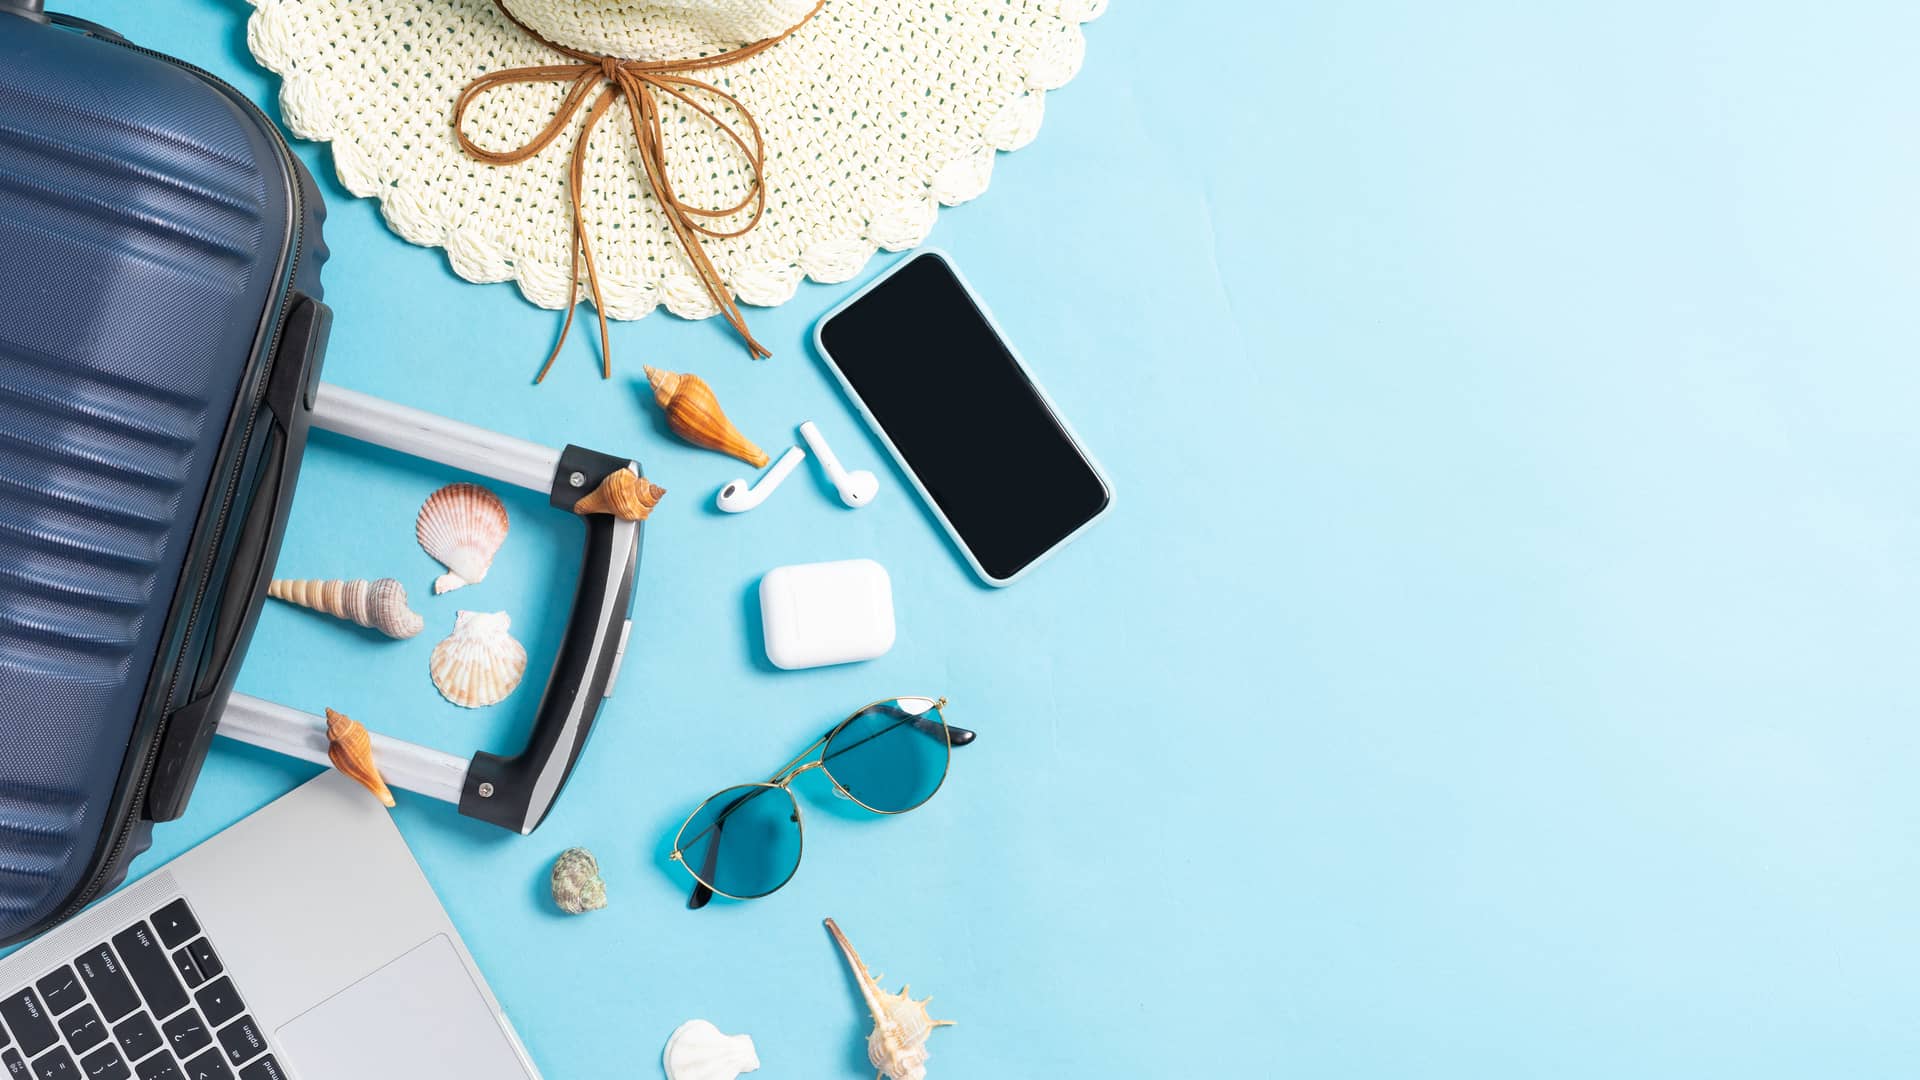 Móvil, maleta, portátil, gafas de sol, sombrero y conchas sobre suelo azul para hablar de los bonos extra de o2, ideales para aquellos de vacaciones